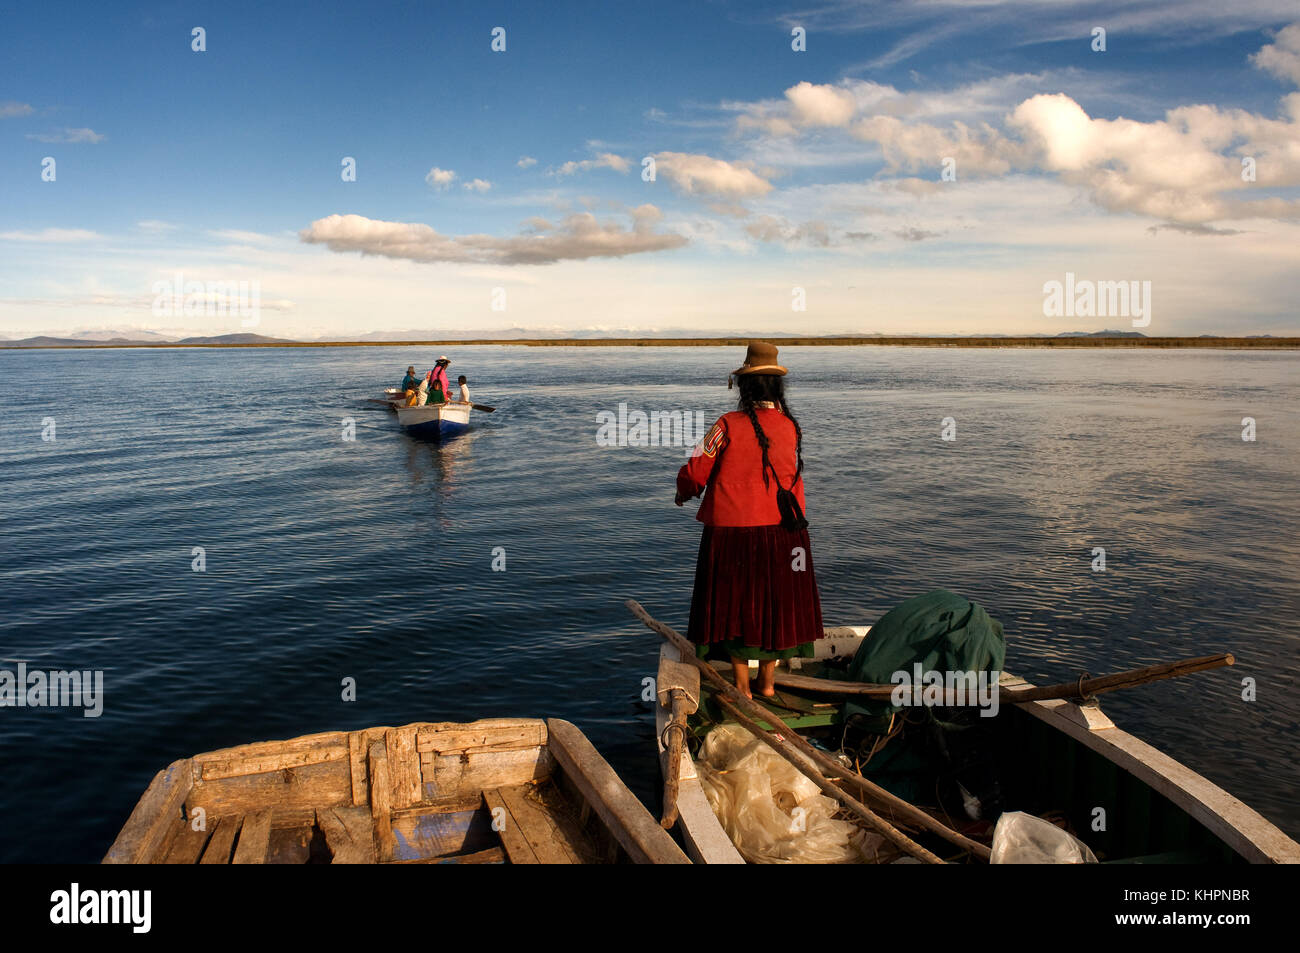 L'île uros, lac Titicaca, Pérou, Amérique du Sud. une femme dans un bateau sur le lac Titicaca, à proximité d'une île habitée par uros. Banque D'Images